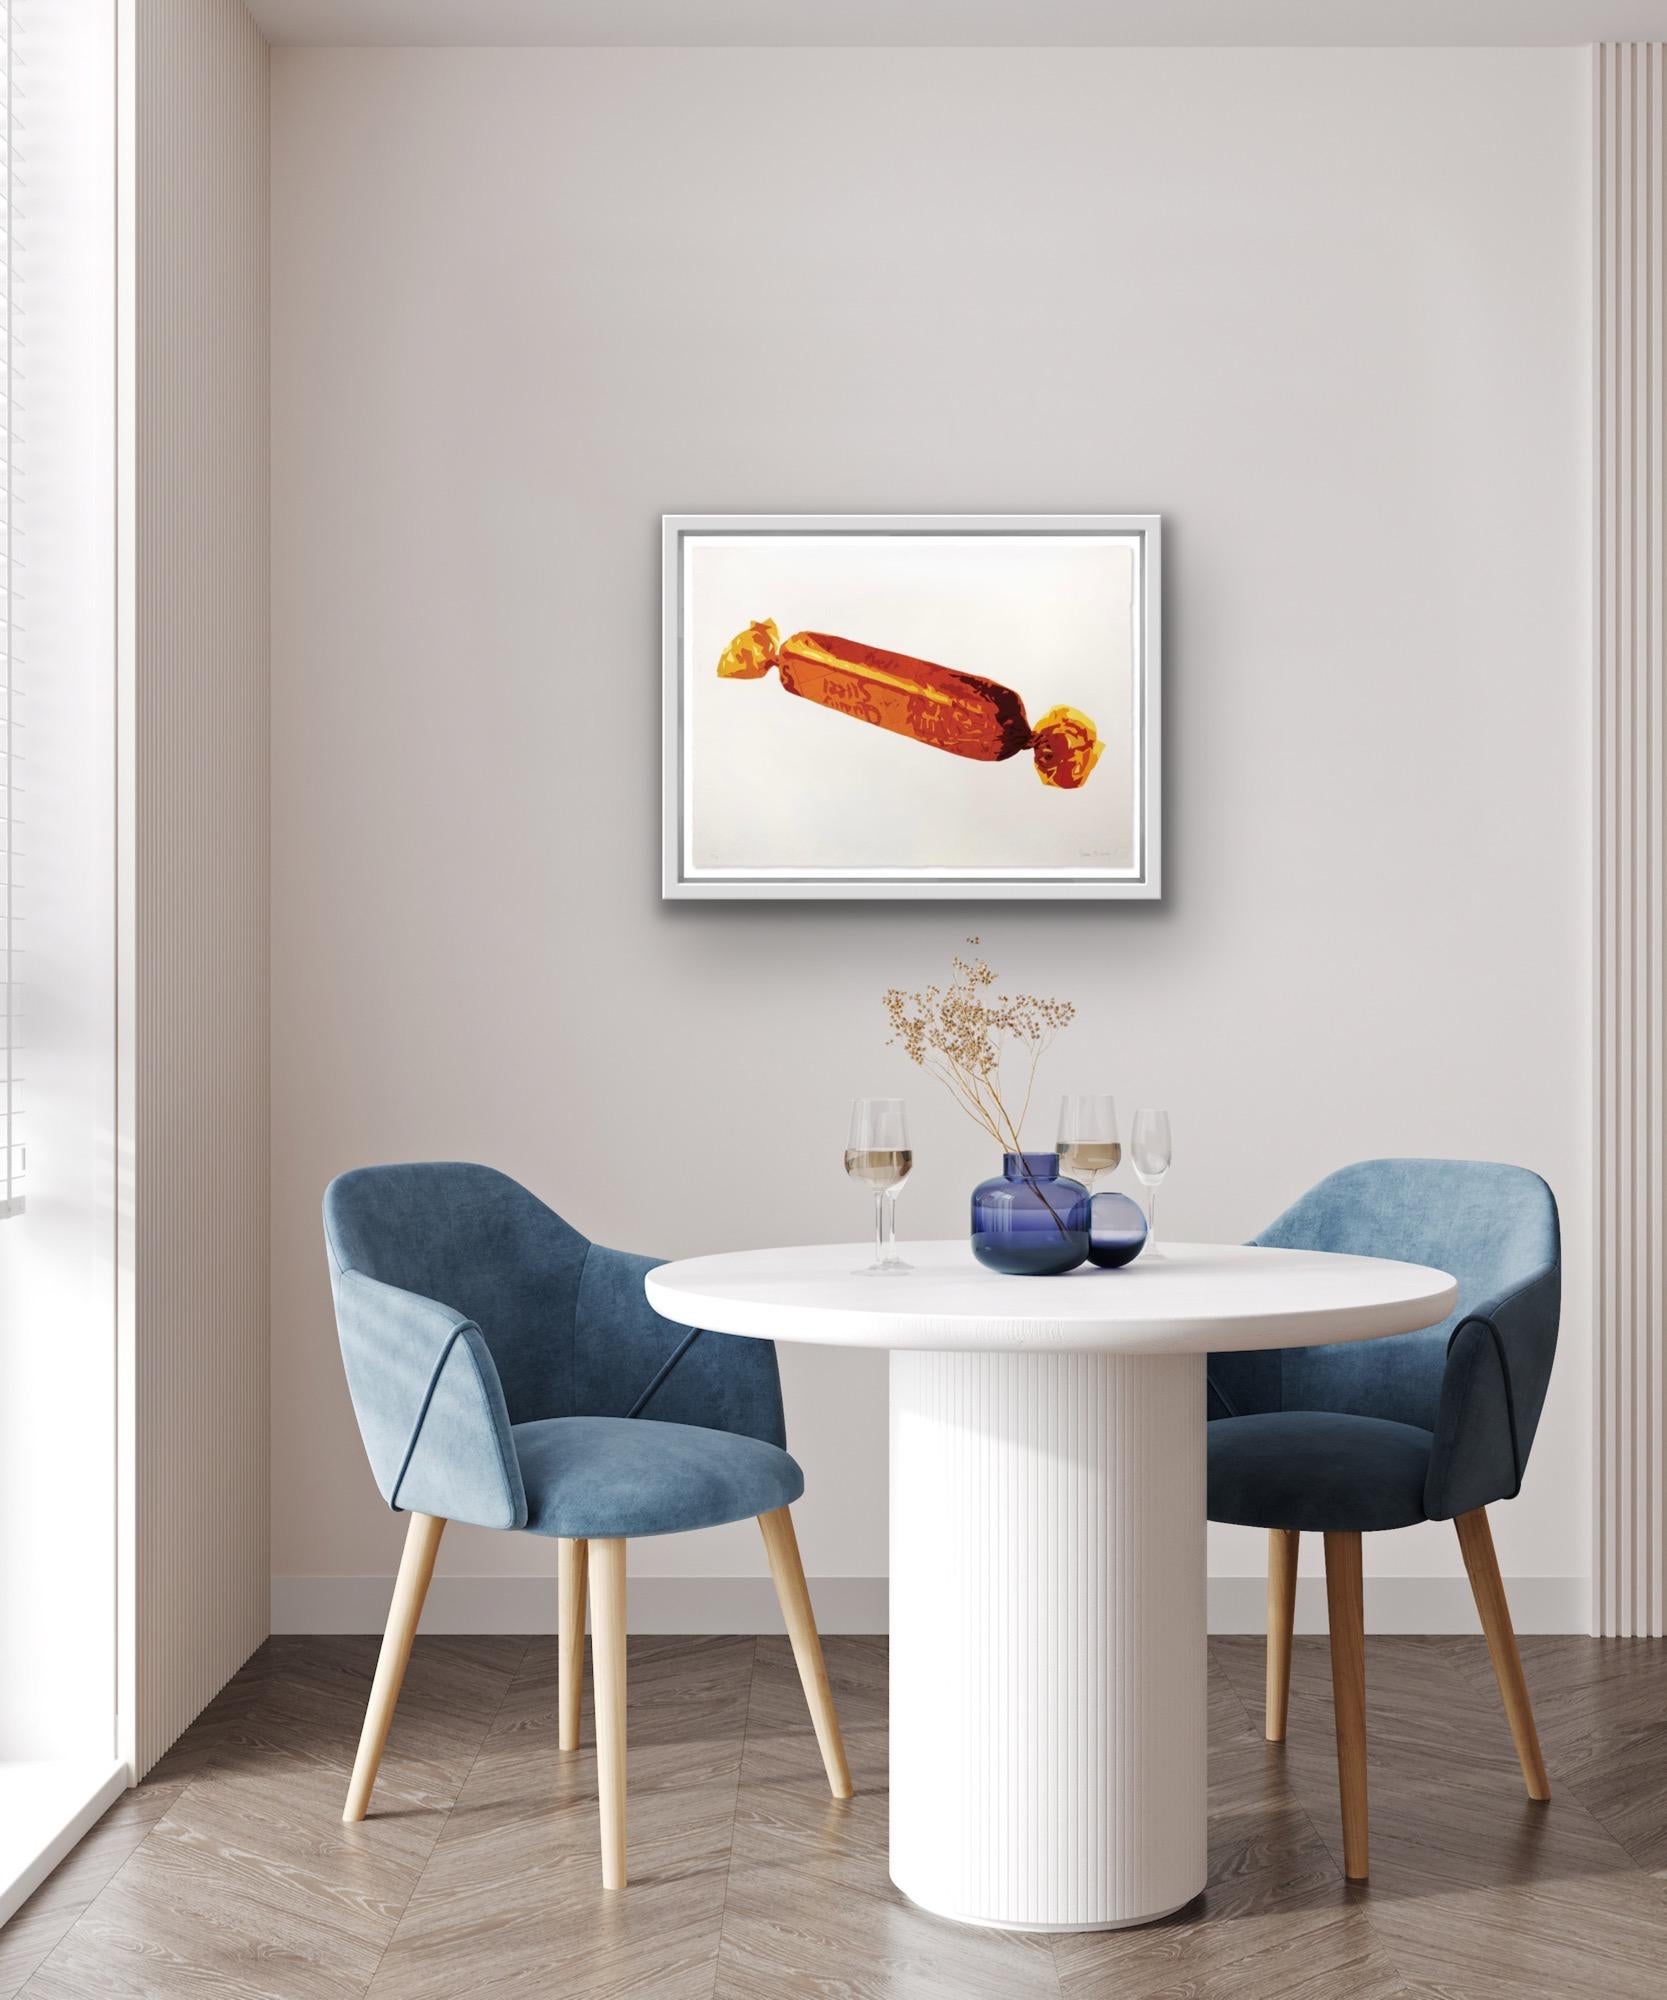 Gold Finger, Sweetie Art, Food Art, Still Life Print, Chocolate Art, Easter Art - White Interior Print by Simon Dry